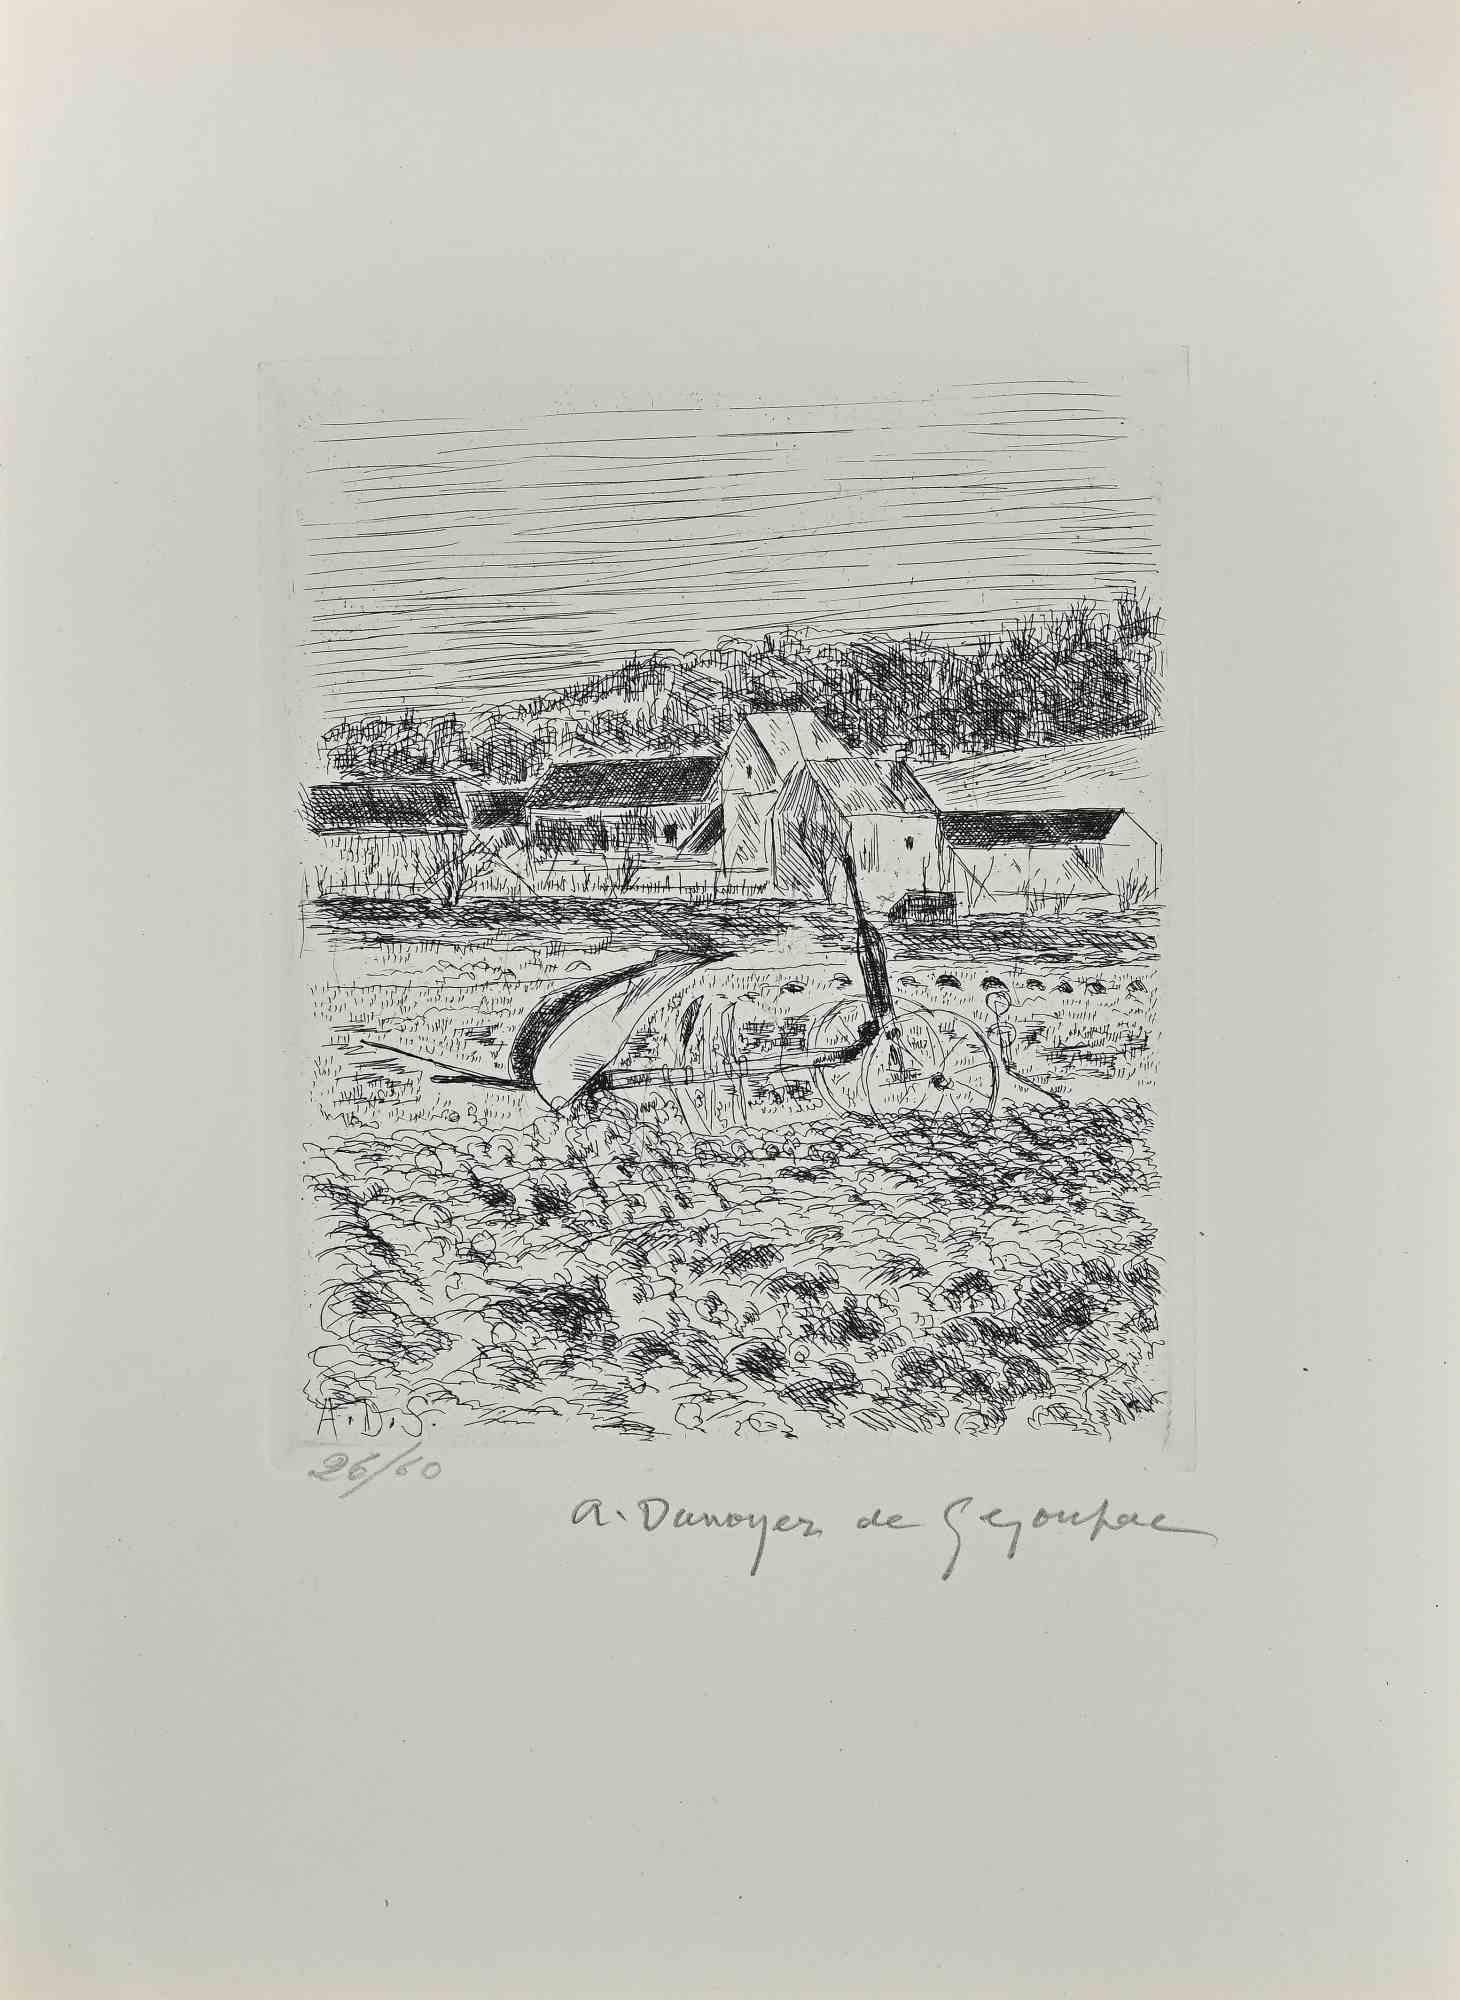 La charrue sur les champs est une eau-forte et une pointe sèche réalisées par André Dunoyer de Segonzac (1884-1974).

Bon état sur un papier jauni.

Signé à la main par l'artiste sur la plaque.

Édition limitée à 60 exemplaires numérotés et